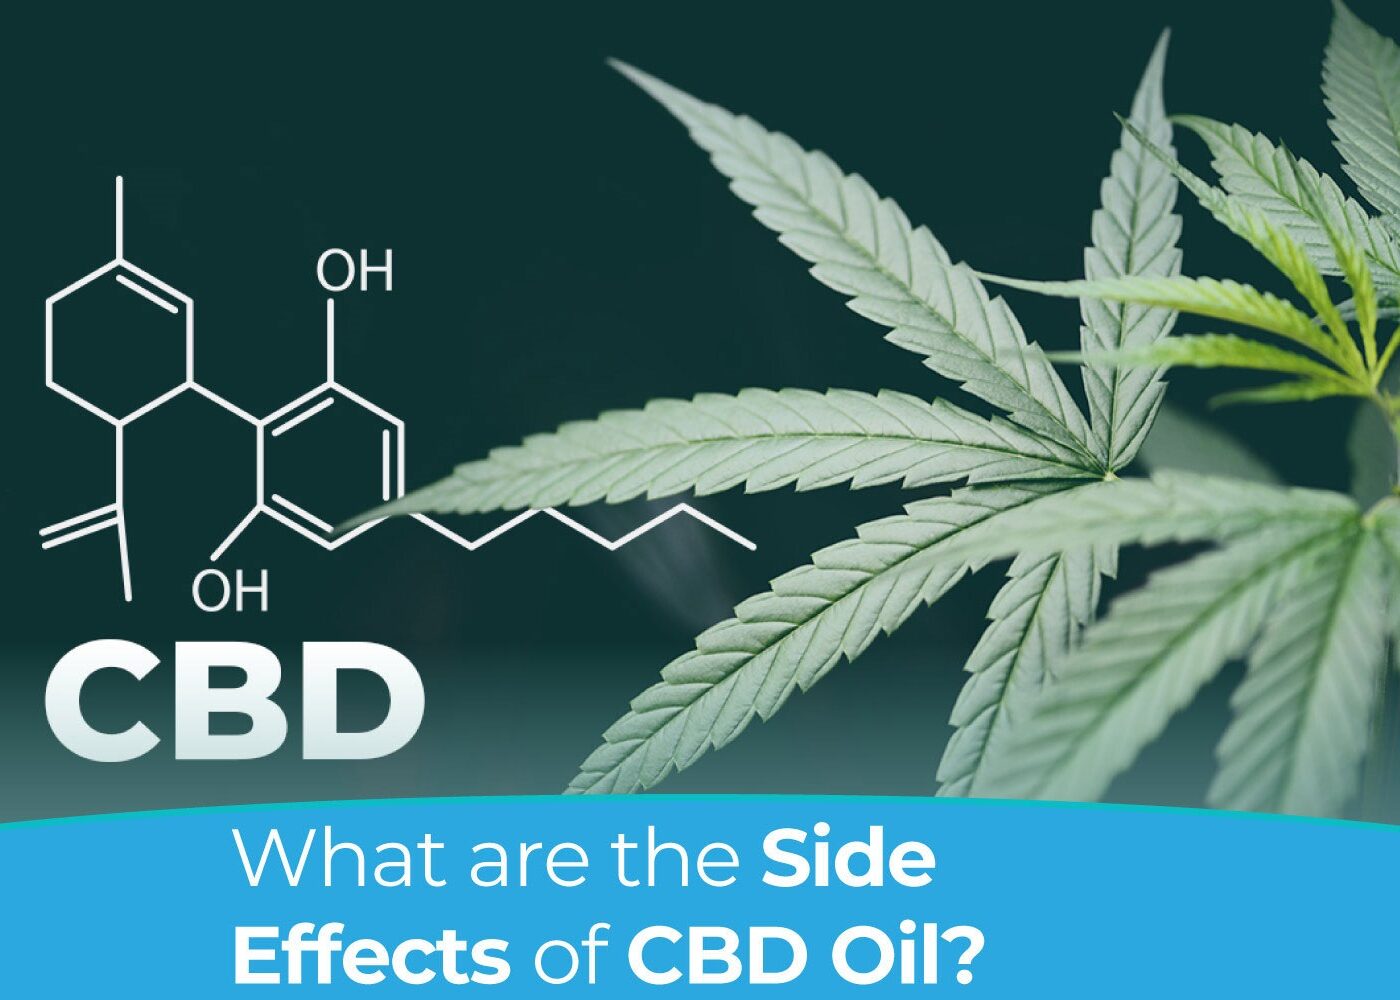 Side Effects of CBD Oil